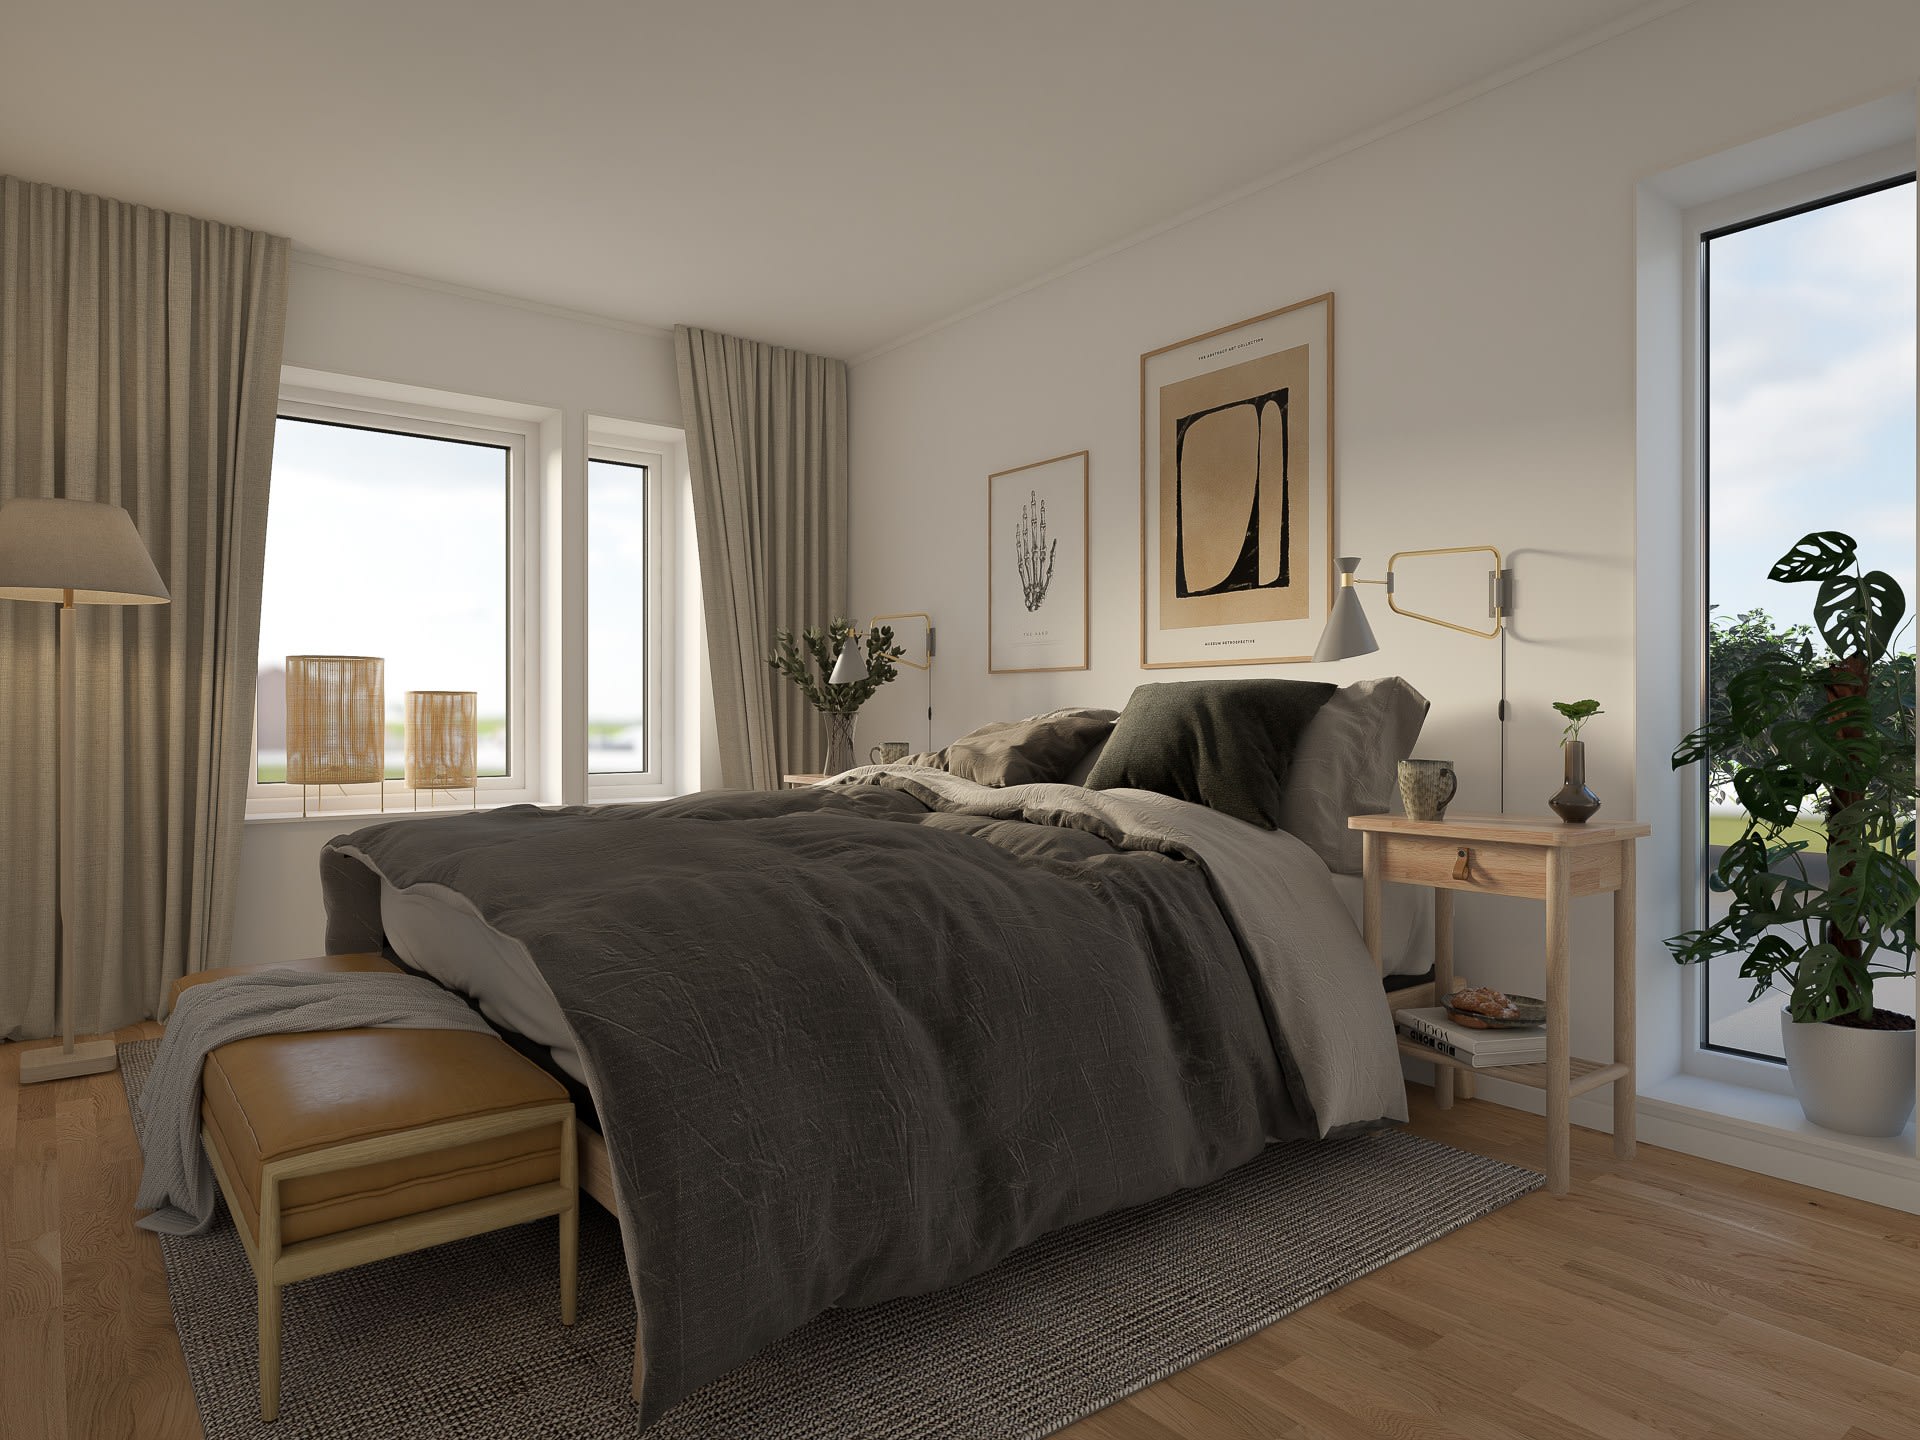 Illustrationsbild: Sovrum med stor dubbelsäng med grått täcke. Fönster släpper in ljus utifrån.